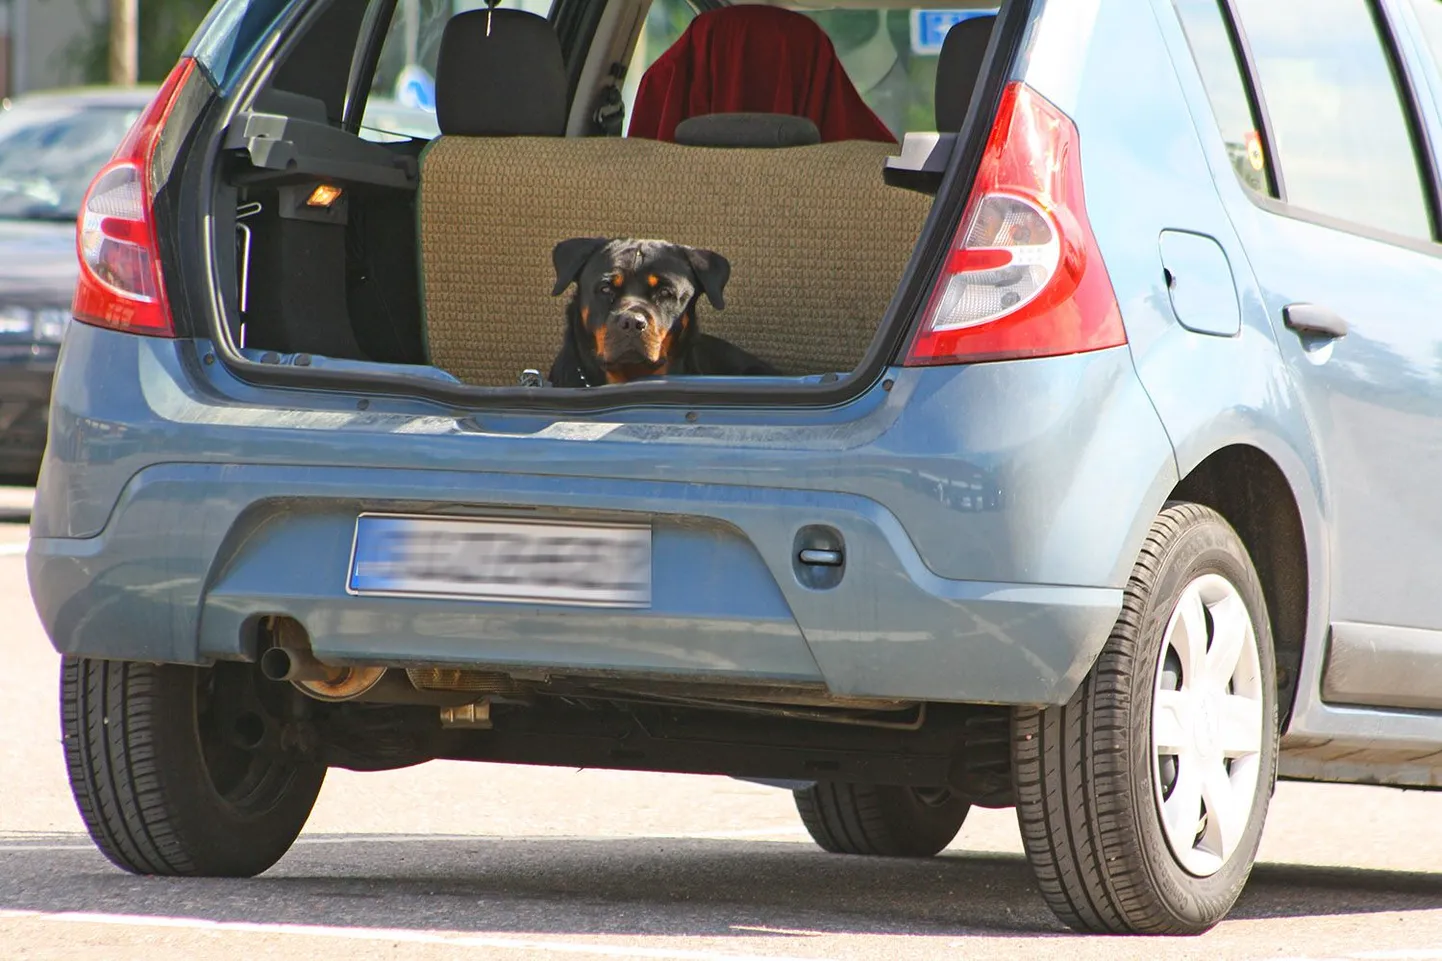 Selle koera peremees on olnud auto juurest lahkudes ettenägelik - auto tagaluuk on jäetud piisavaks õhuvahetuseks avatuks. Kinnises ja umbses autos ei peaks koer kaua vastu. Foto on illustratiivne.